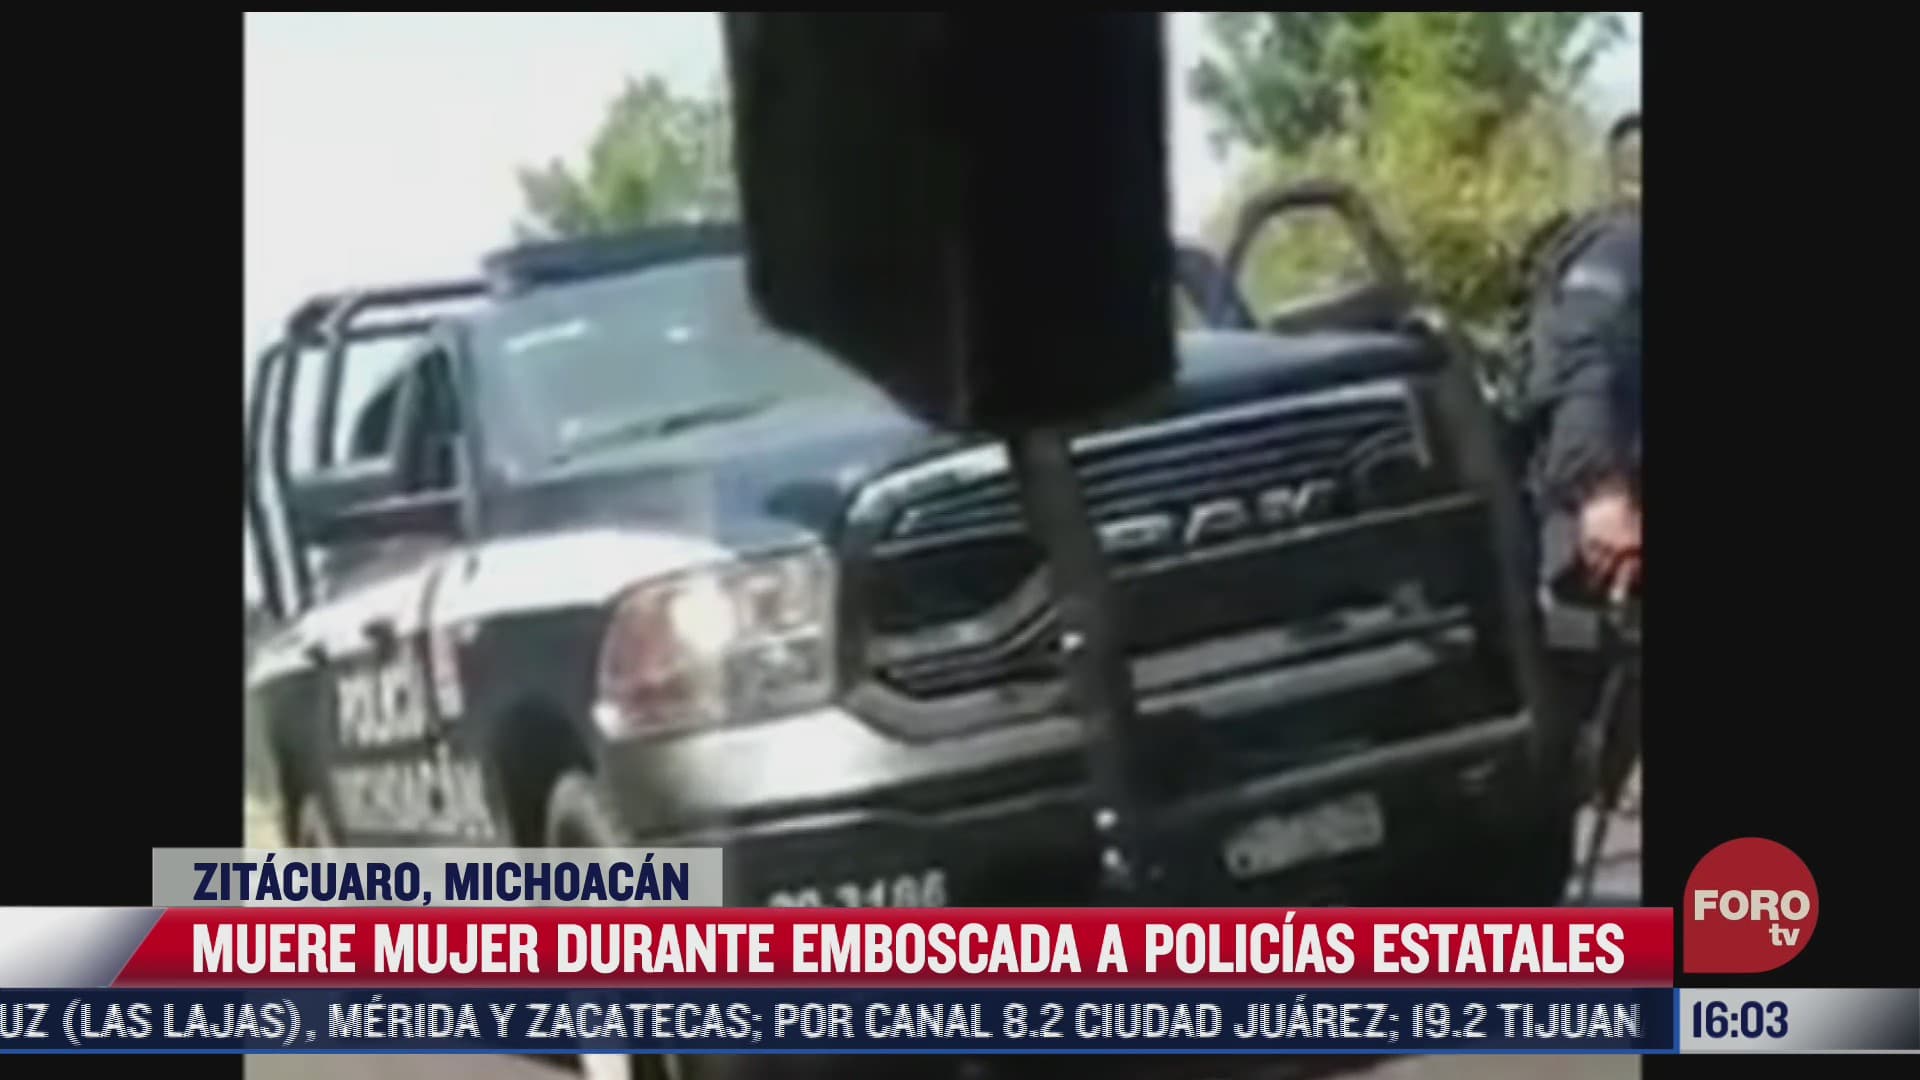 muere mujer durante emboscada a policias en michoacan